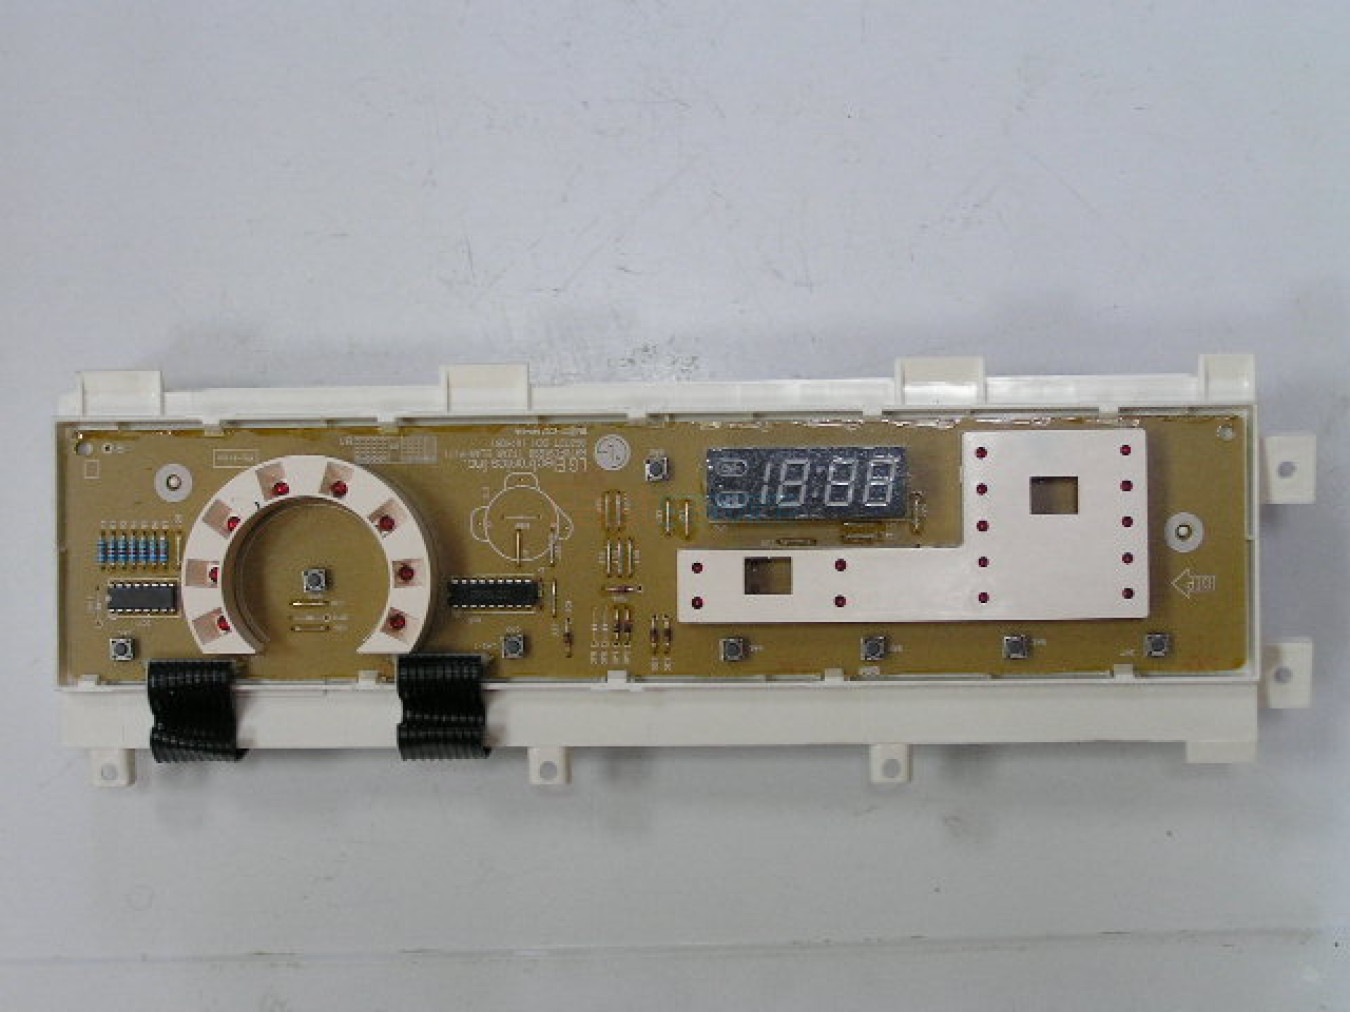 6871ER1035P Модуль управления СМА LG EBR36721513